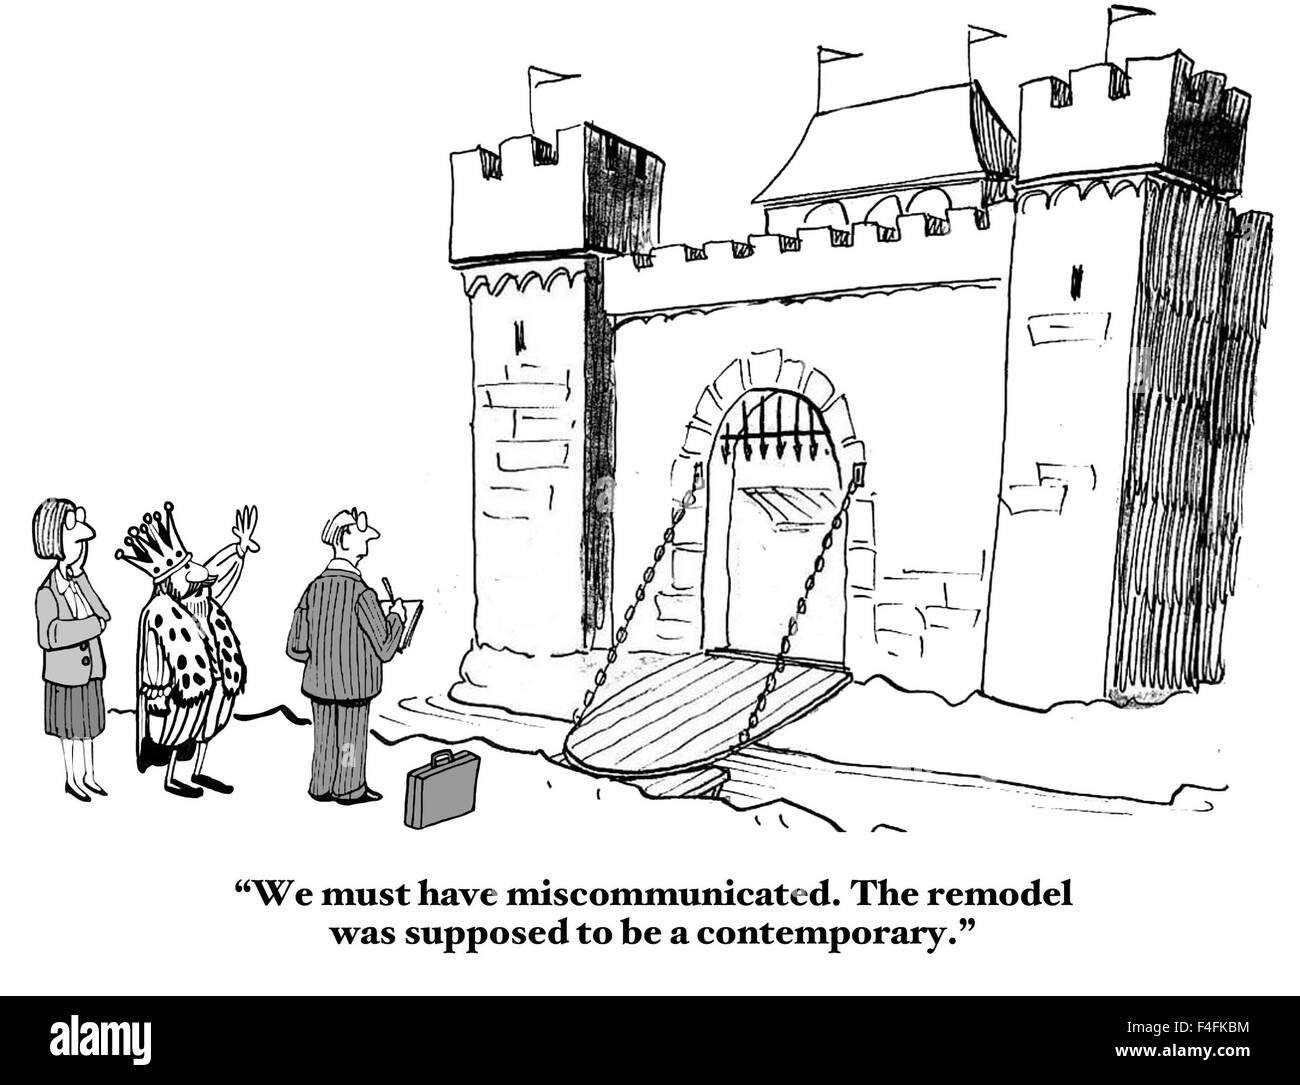 Cartoon professionnel du roi dire aux gens : "Nous devons avoir miscommunicated. La rénovation a été censé être un contemporain'. Banque D'Images